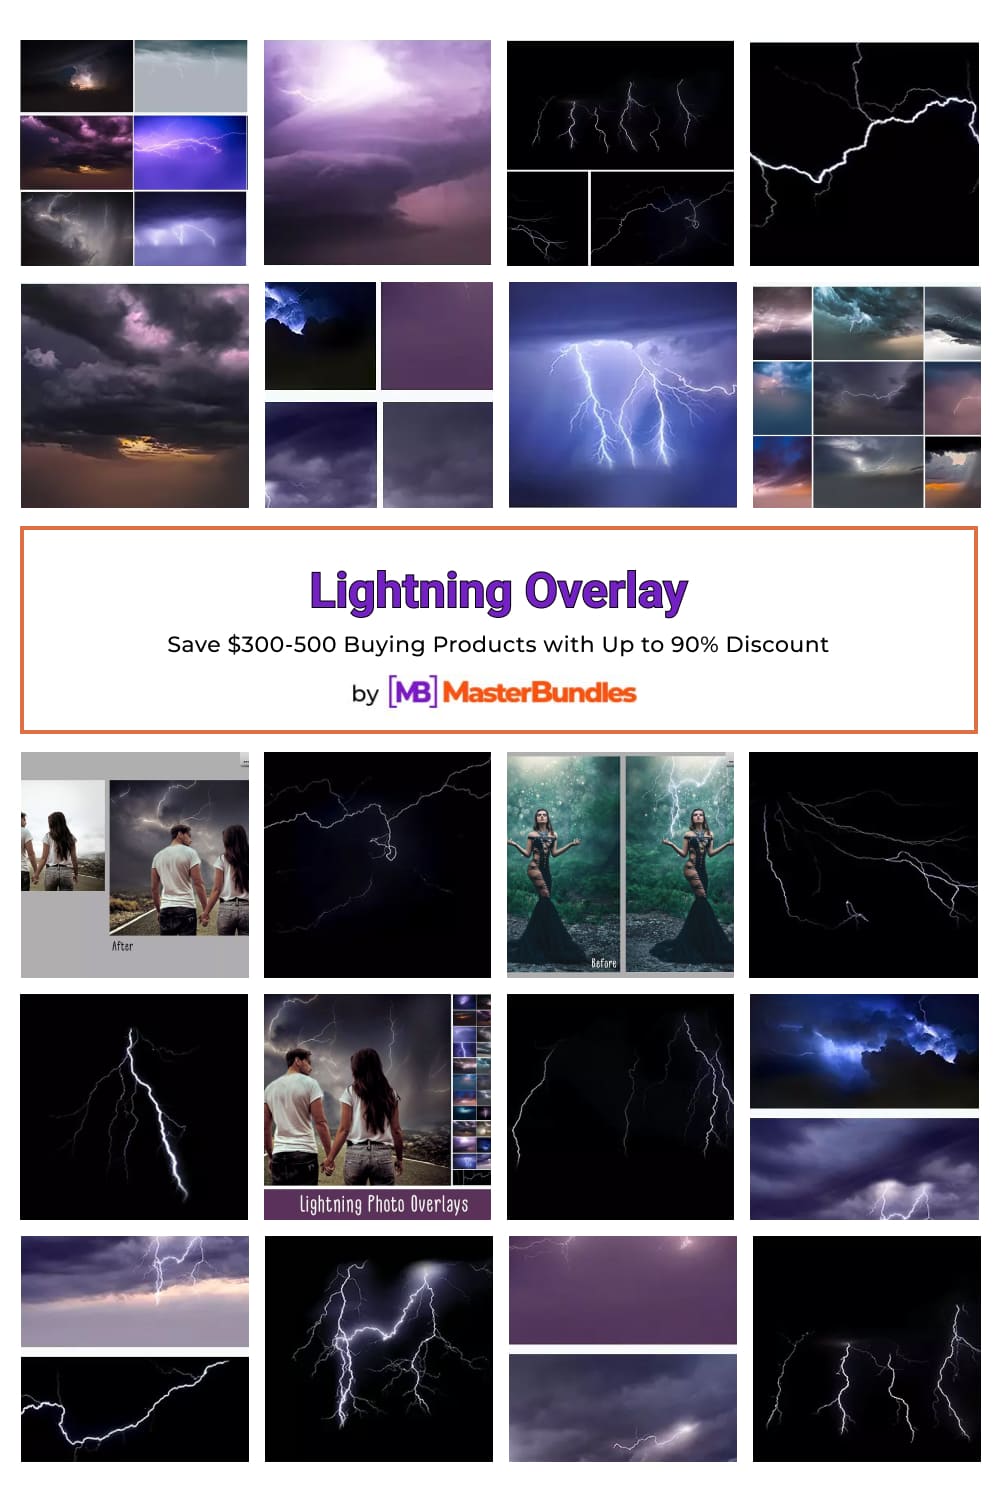 Lightning Overlay Pinterest image.